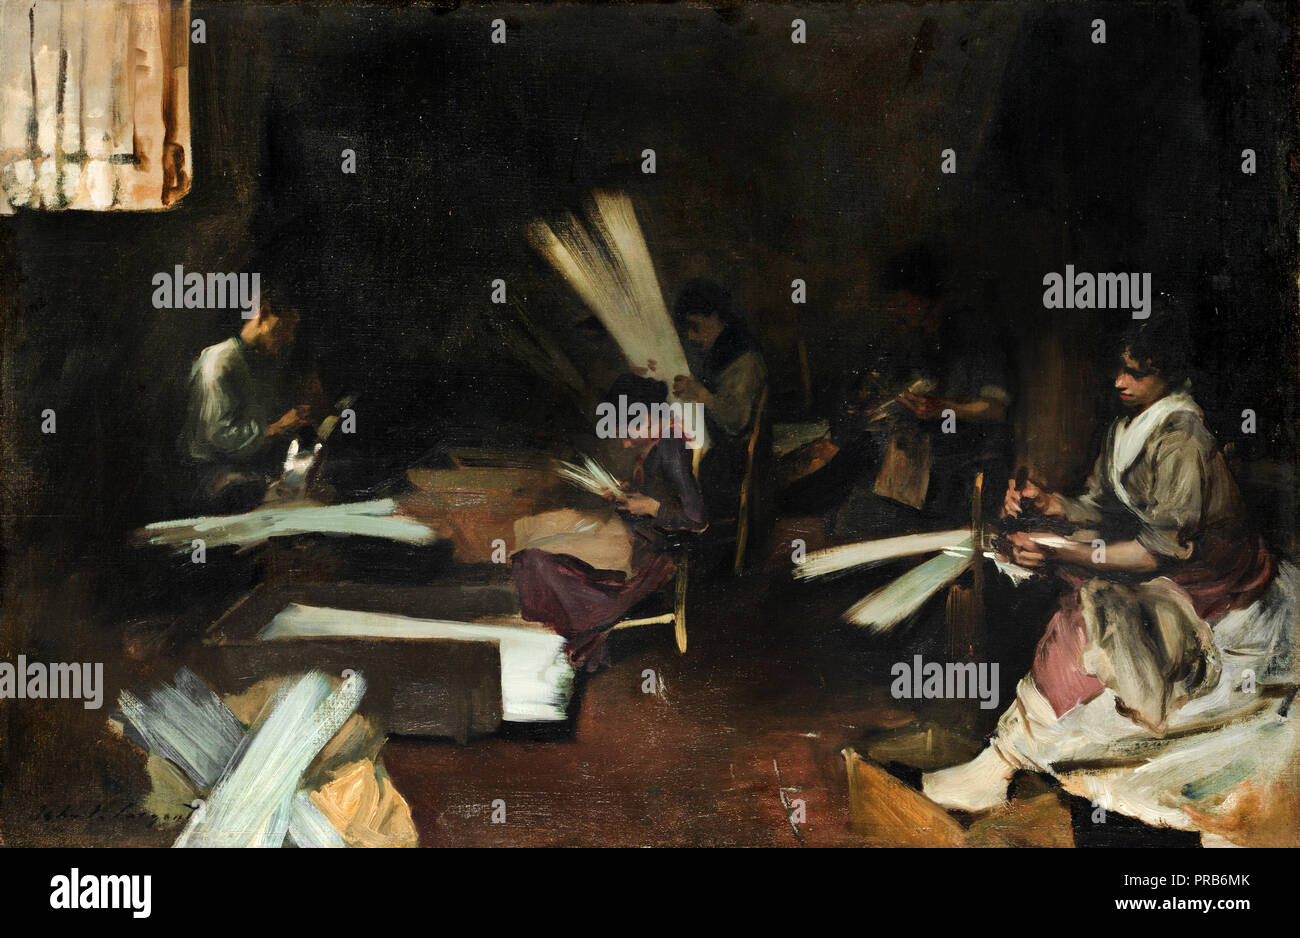 John Singer Sargent, travailleurs en verre vénitien, vers 1880-1882, huile sur toile, l'Art Institute of Chicago, USA. Banque D'Images